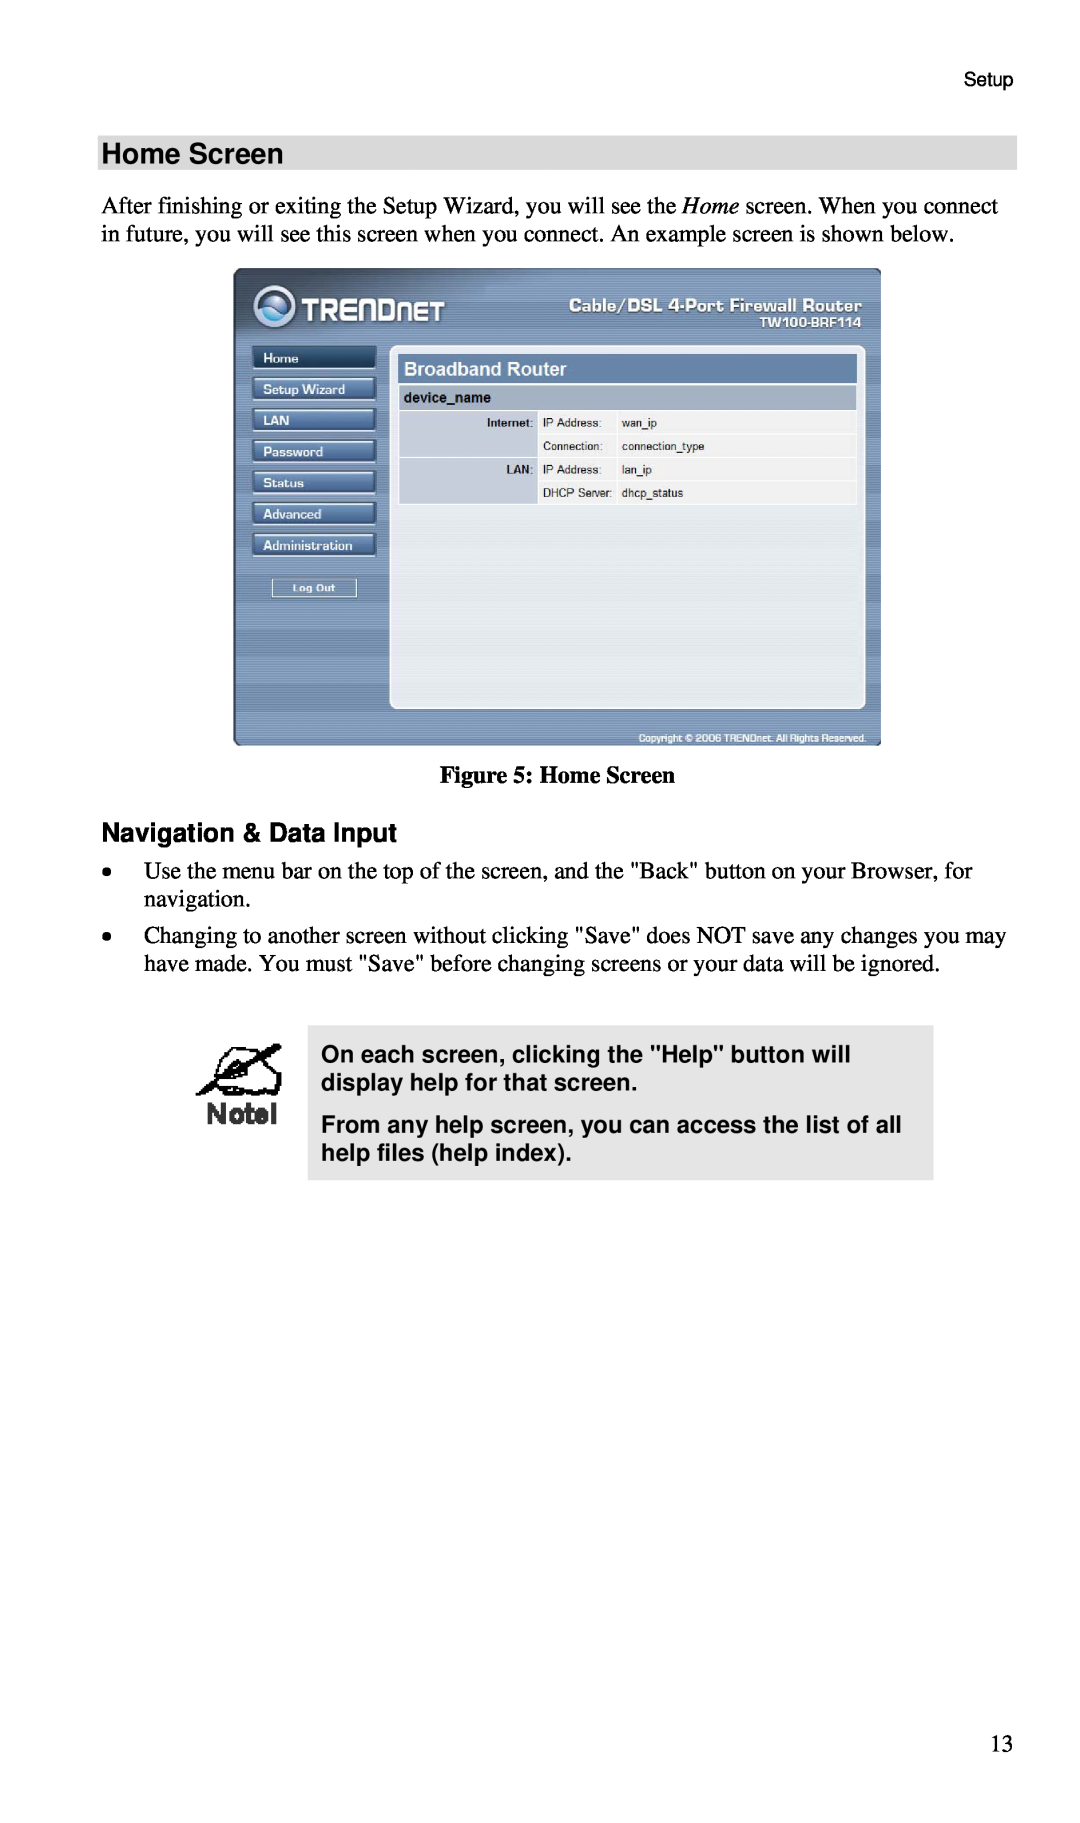 TRENDnet BRF114 manual Home Screen, Navigation & Data Input 